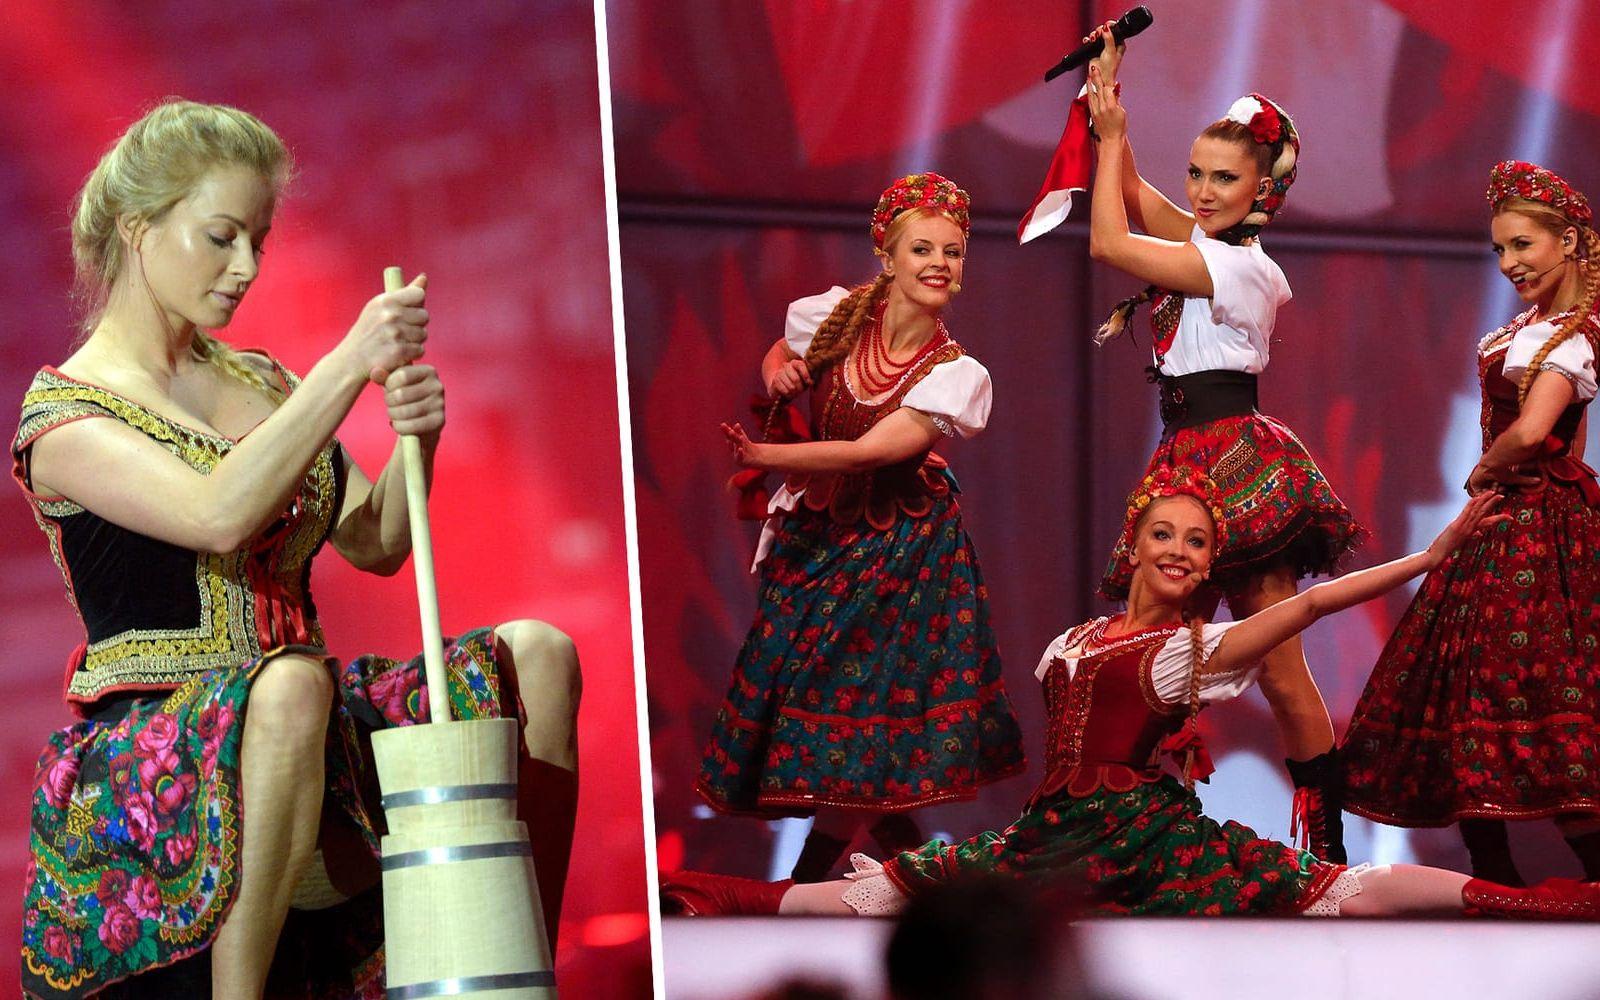 <strong>#11 Polen 2014: Donatan & Cleo, ”My Slowianie - we are Slavic”.</strong> Polen blev en stor snackis det här året, då deras bidrag bland annat innehöll en sekvens i vilken de kärnade smör (!) på scen på ett ganska utstuderat sätt. Foto: TT